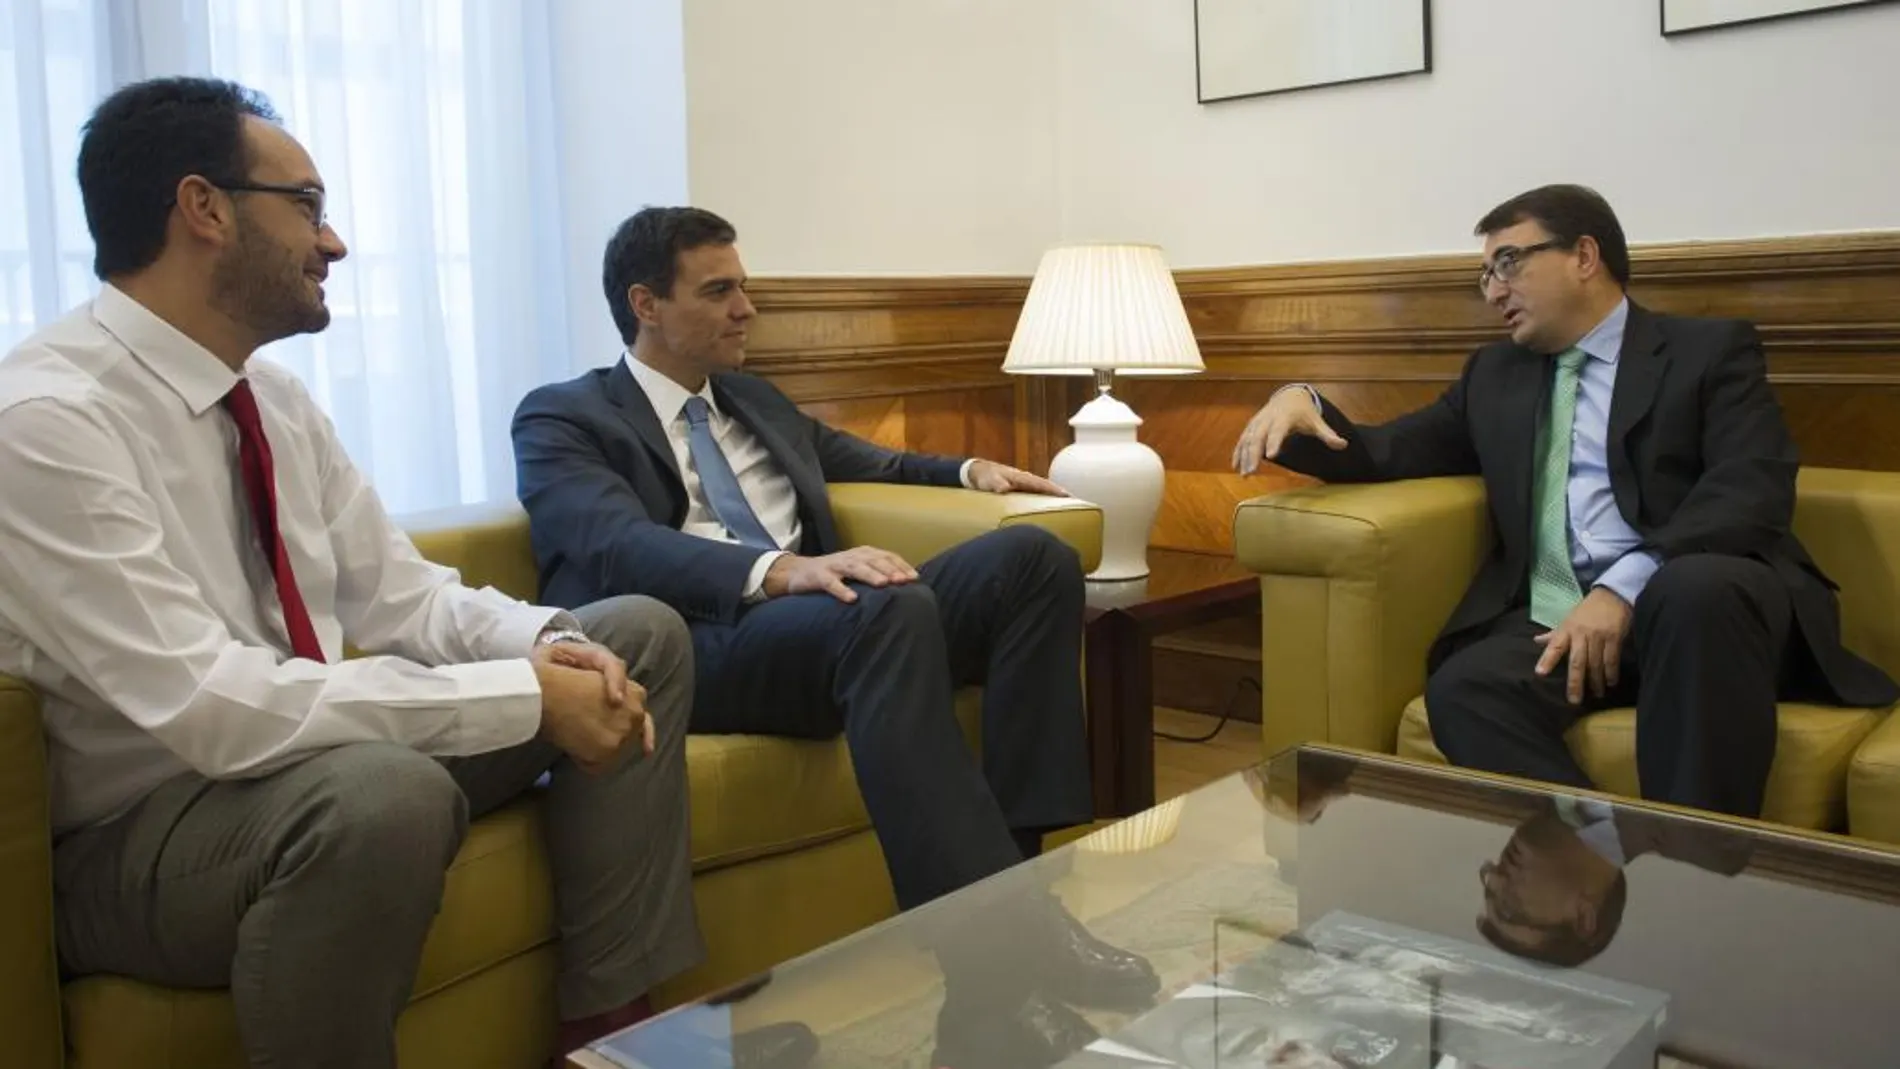 El líder del PSOE Pedro Sánchez, en una imagen de archivo junto al portavoz en el Congreso, Antonio Hernando, y el diputado del PNV Aitor Esteban